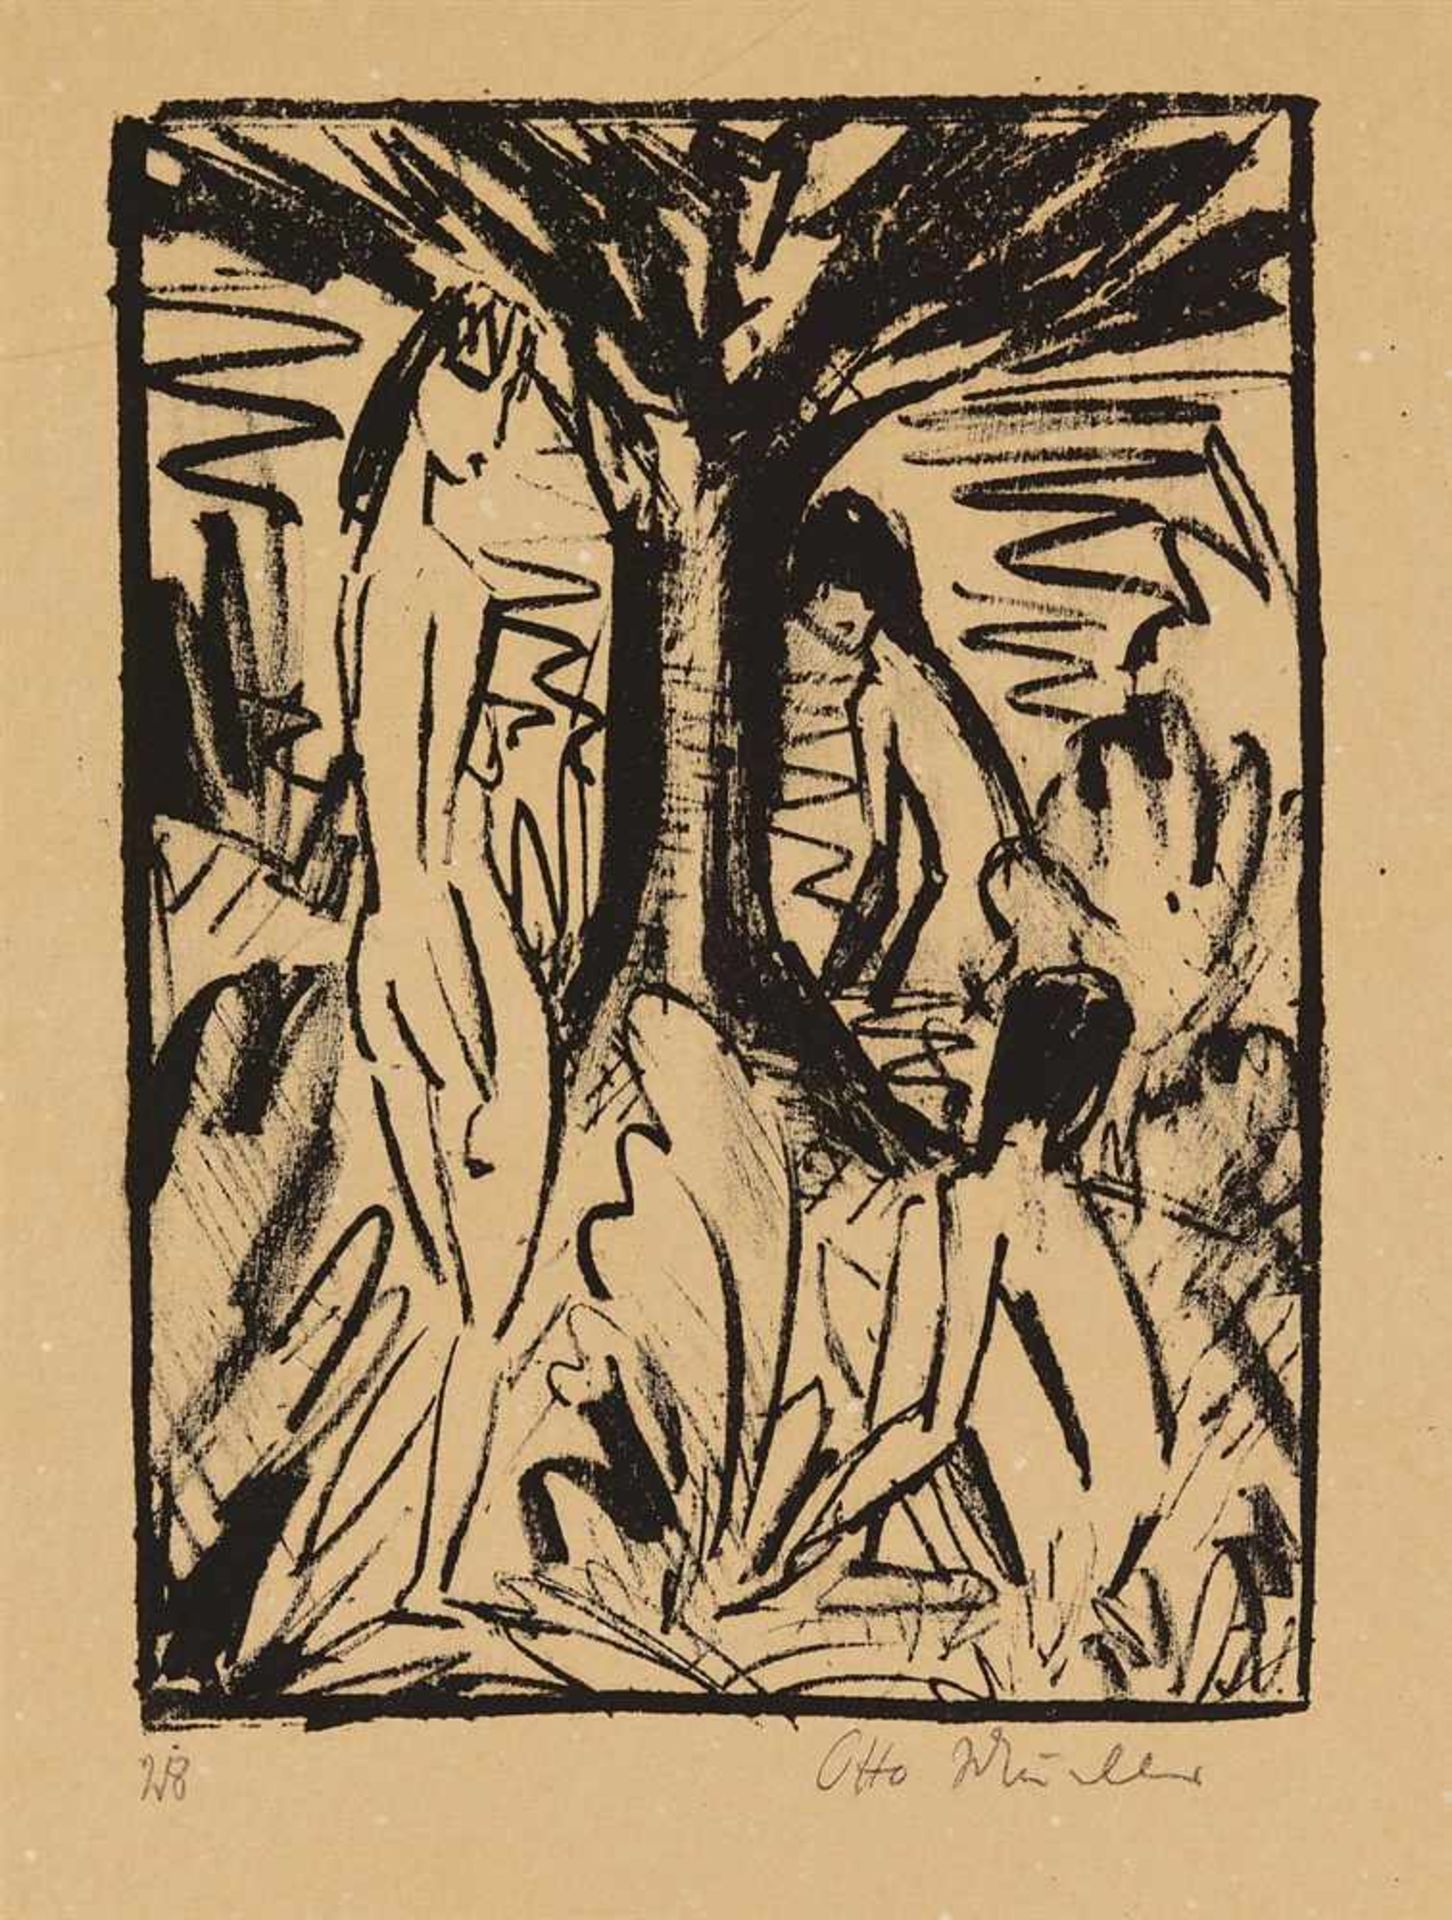 Otto MuellerStehendes, sitzendes und badendes Mädchen am Baum (Akte unter Bäumen) Original-